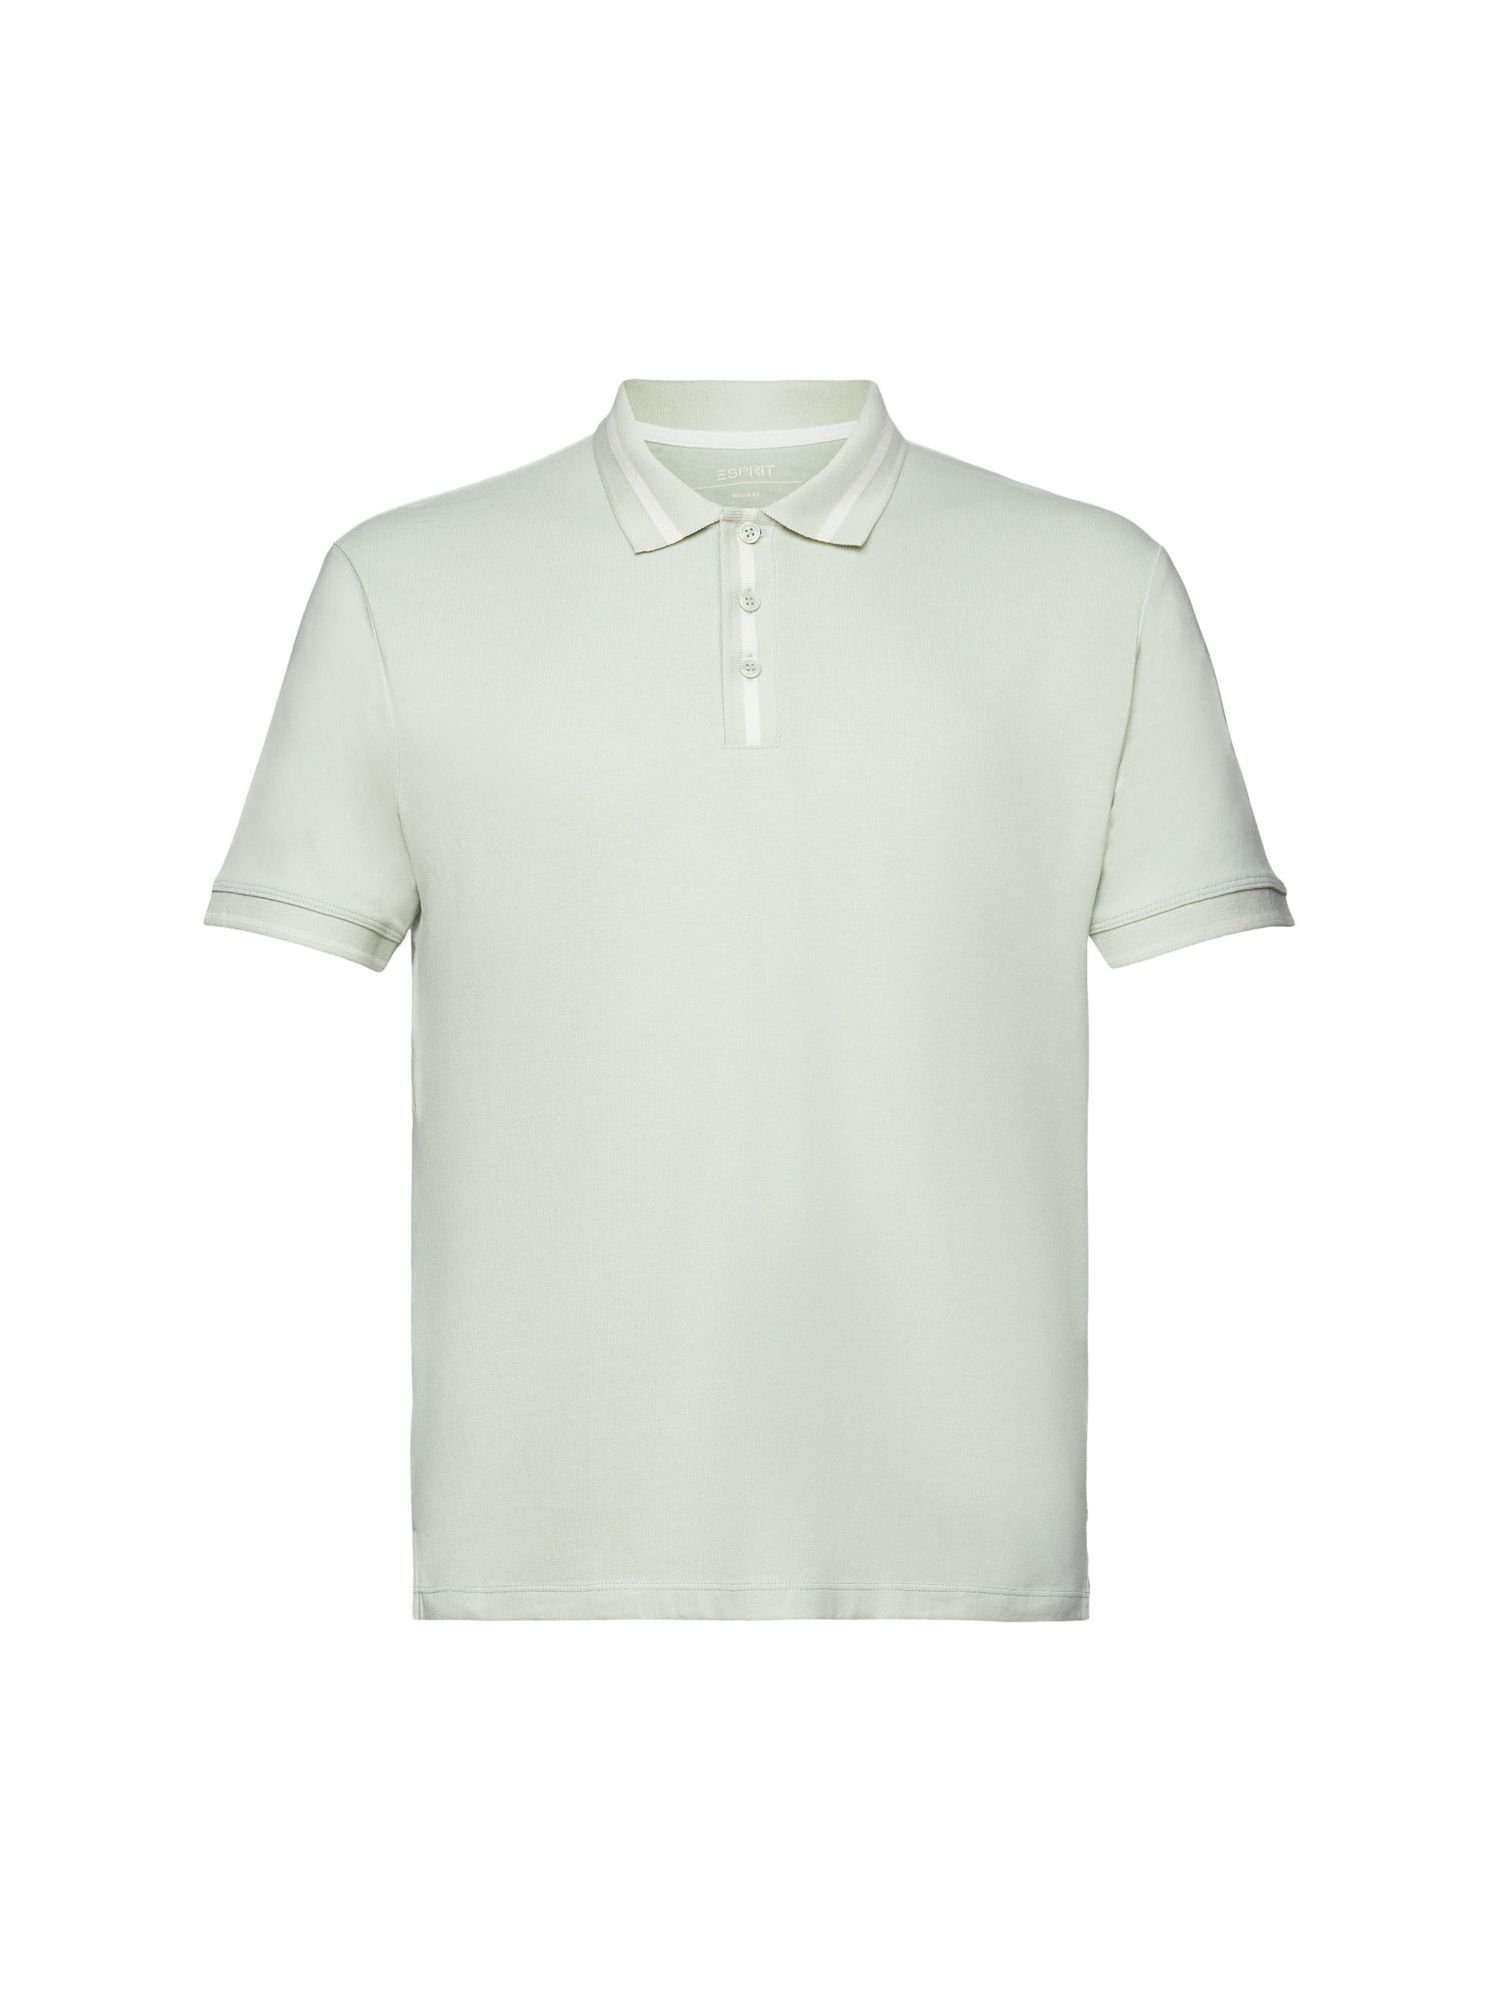 Jersey, Polo-Shirt Baumwollmix aus Esprit GREEN Poloshirt PASTEL